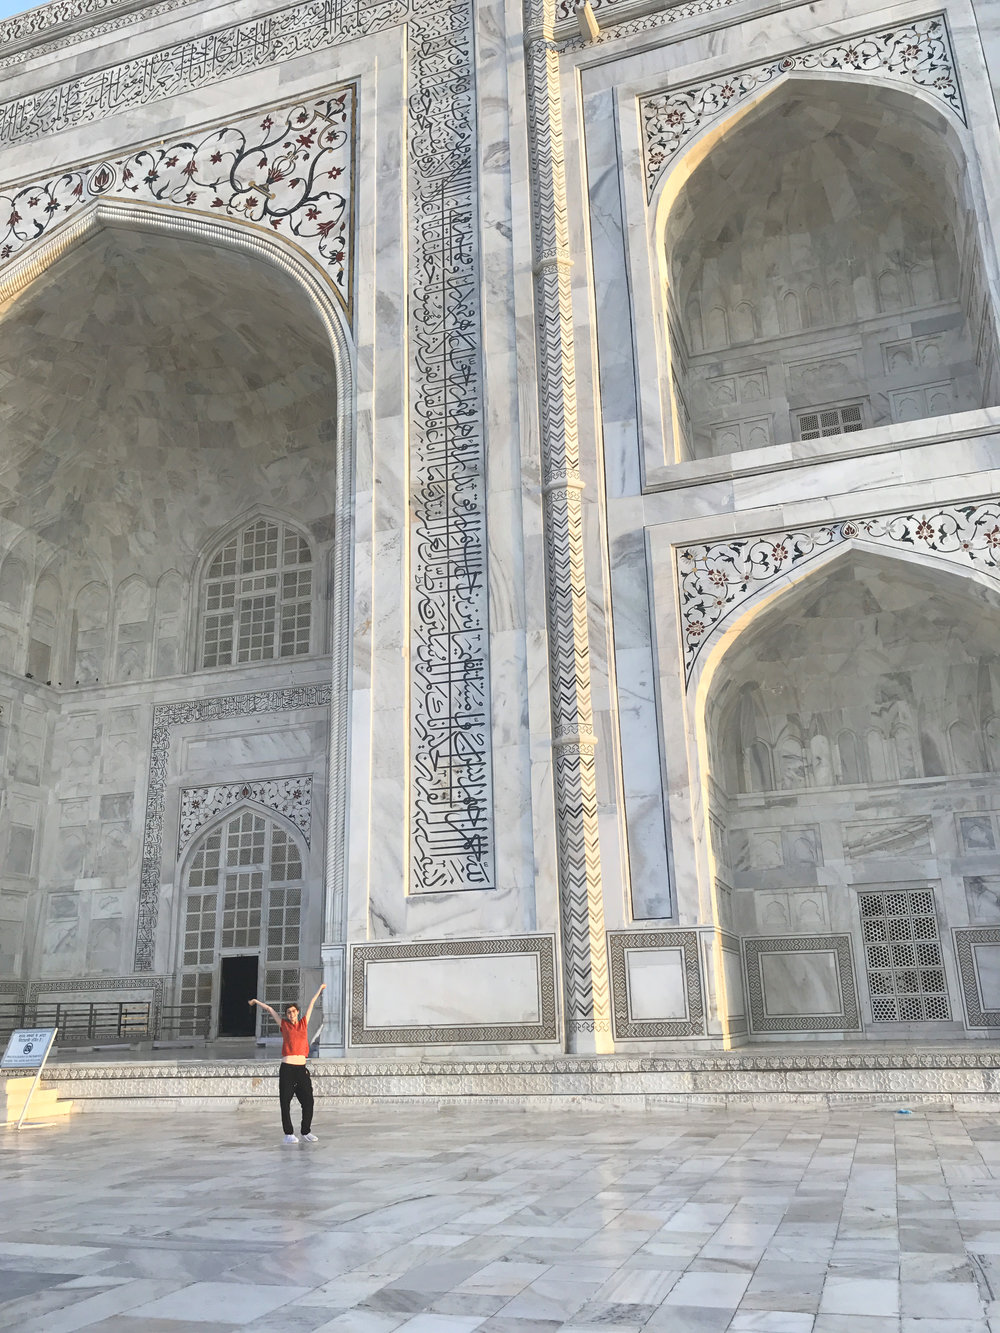 the huge white entrance of the Taj